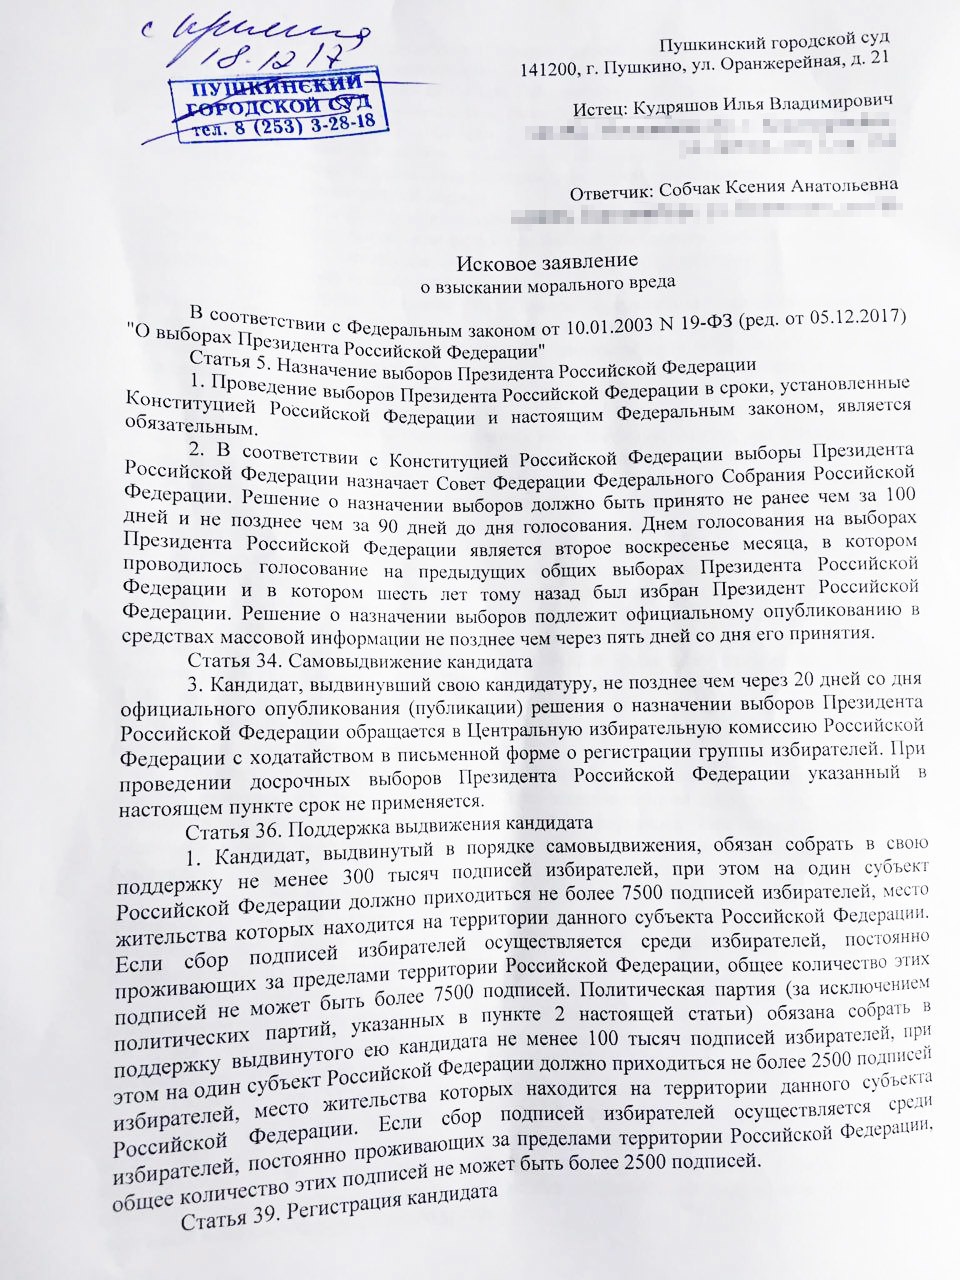 Чувствую себя обманутым: К "кандидату" Собчак подан иск на 1 млн рублей